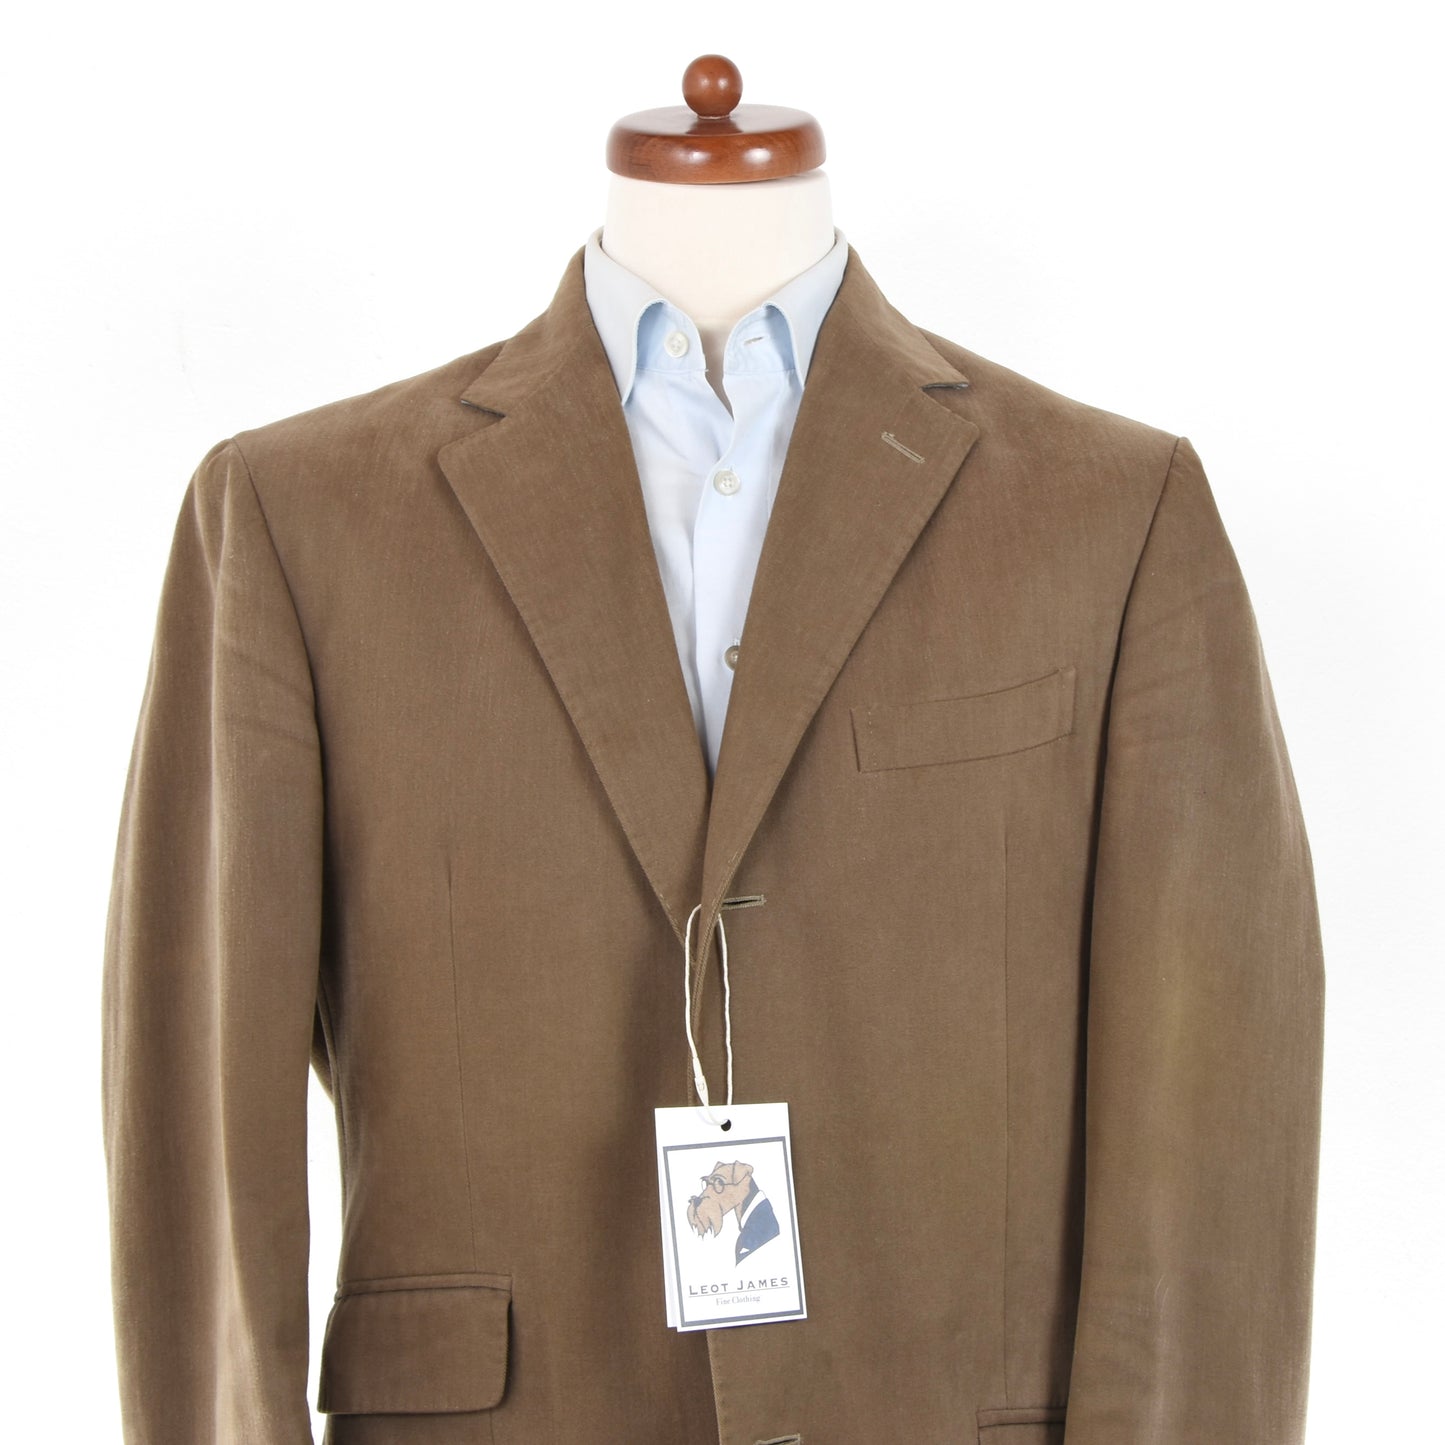 Boglioli Cotton Suit Size 52 Long DEFECT - Tan/Brown